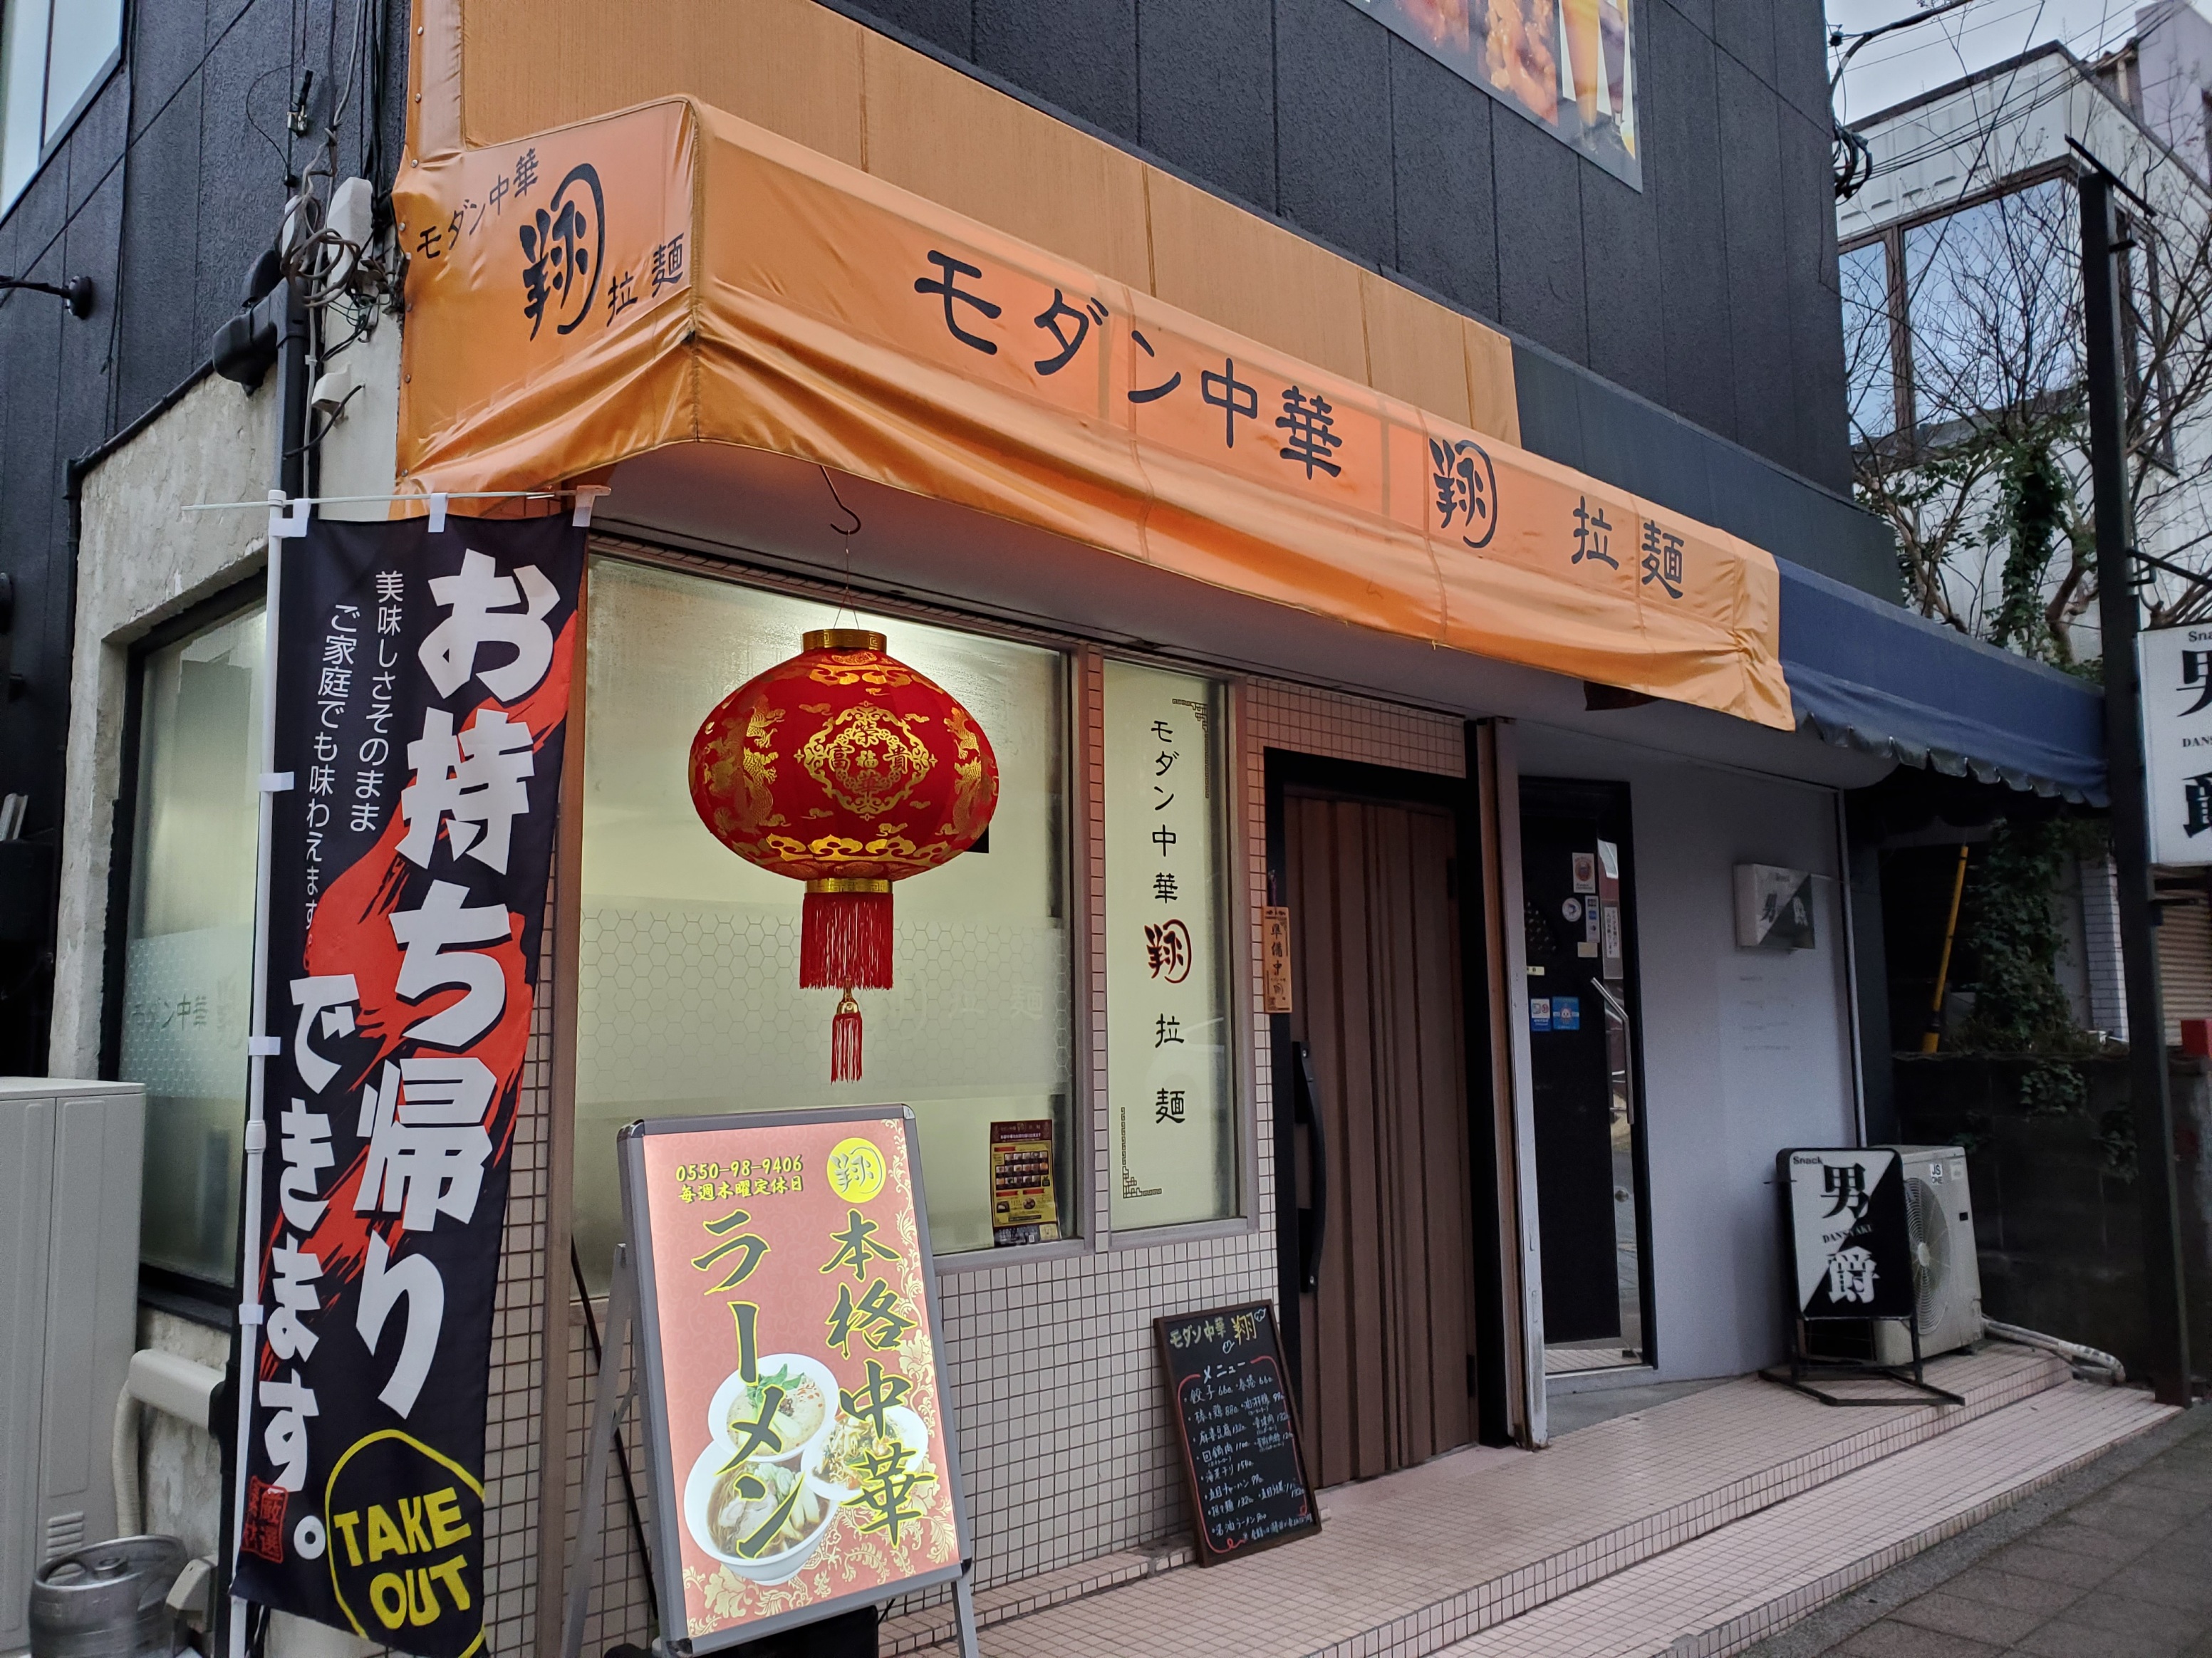 御殿場駅前のメイン通りに面したオレンジ色の看板の中華料理店です